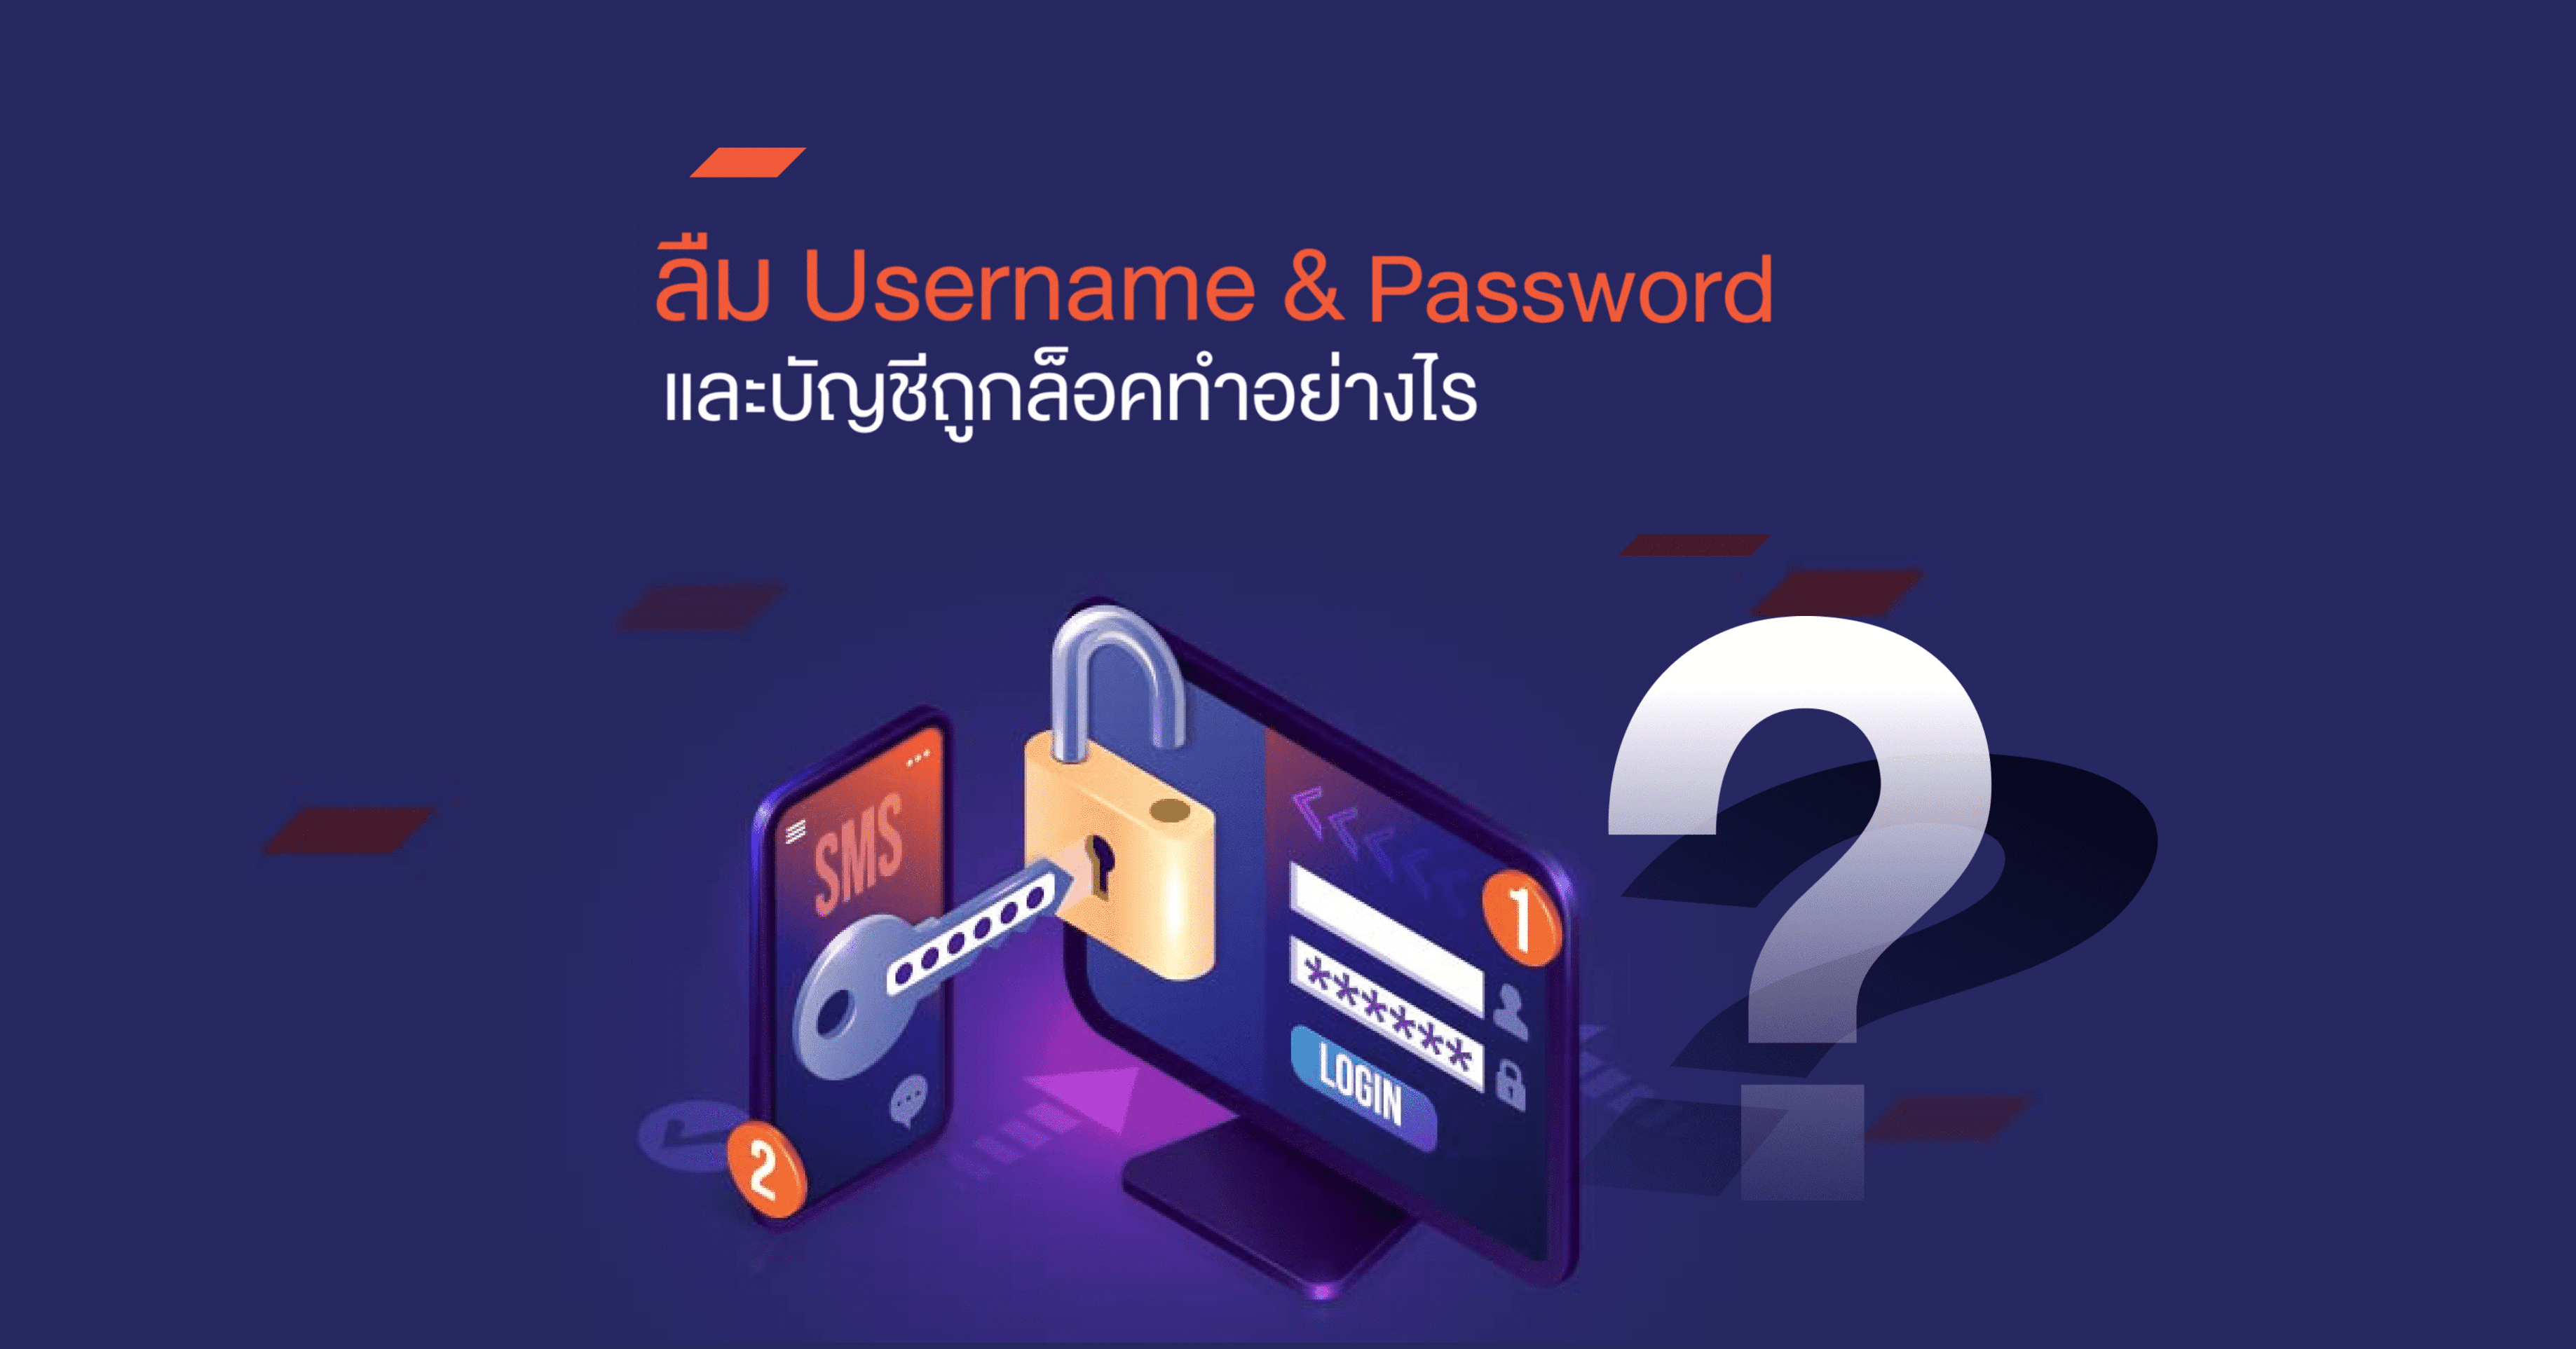 ลืม Username Password Email และบัญชีถูกล็อค ทำอย่างไร